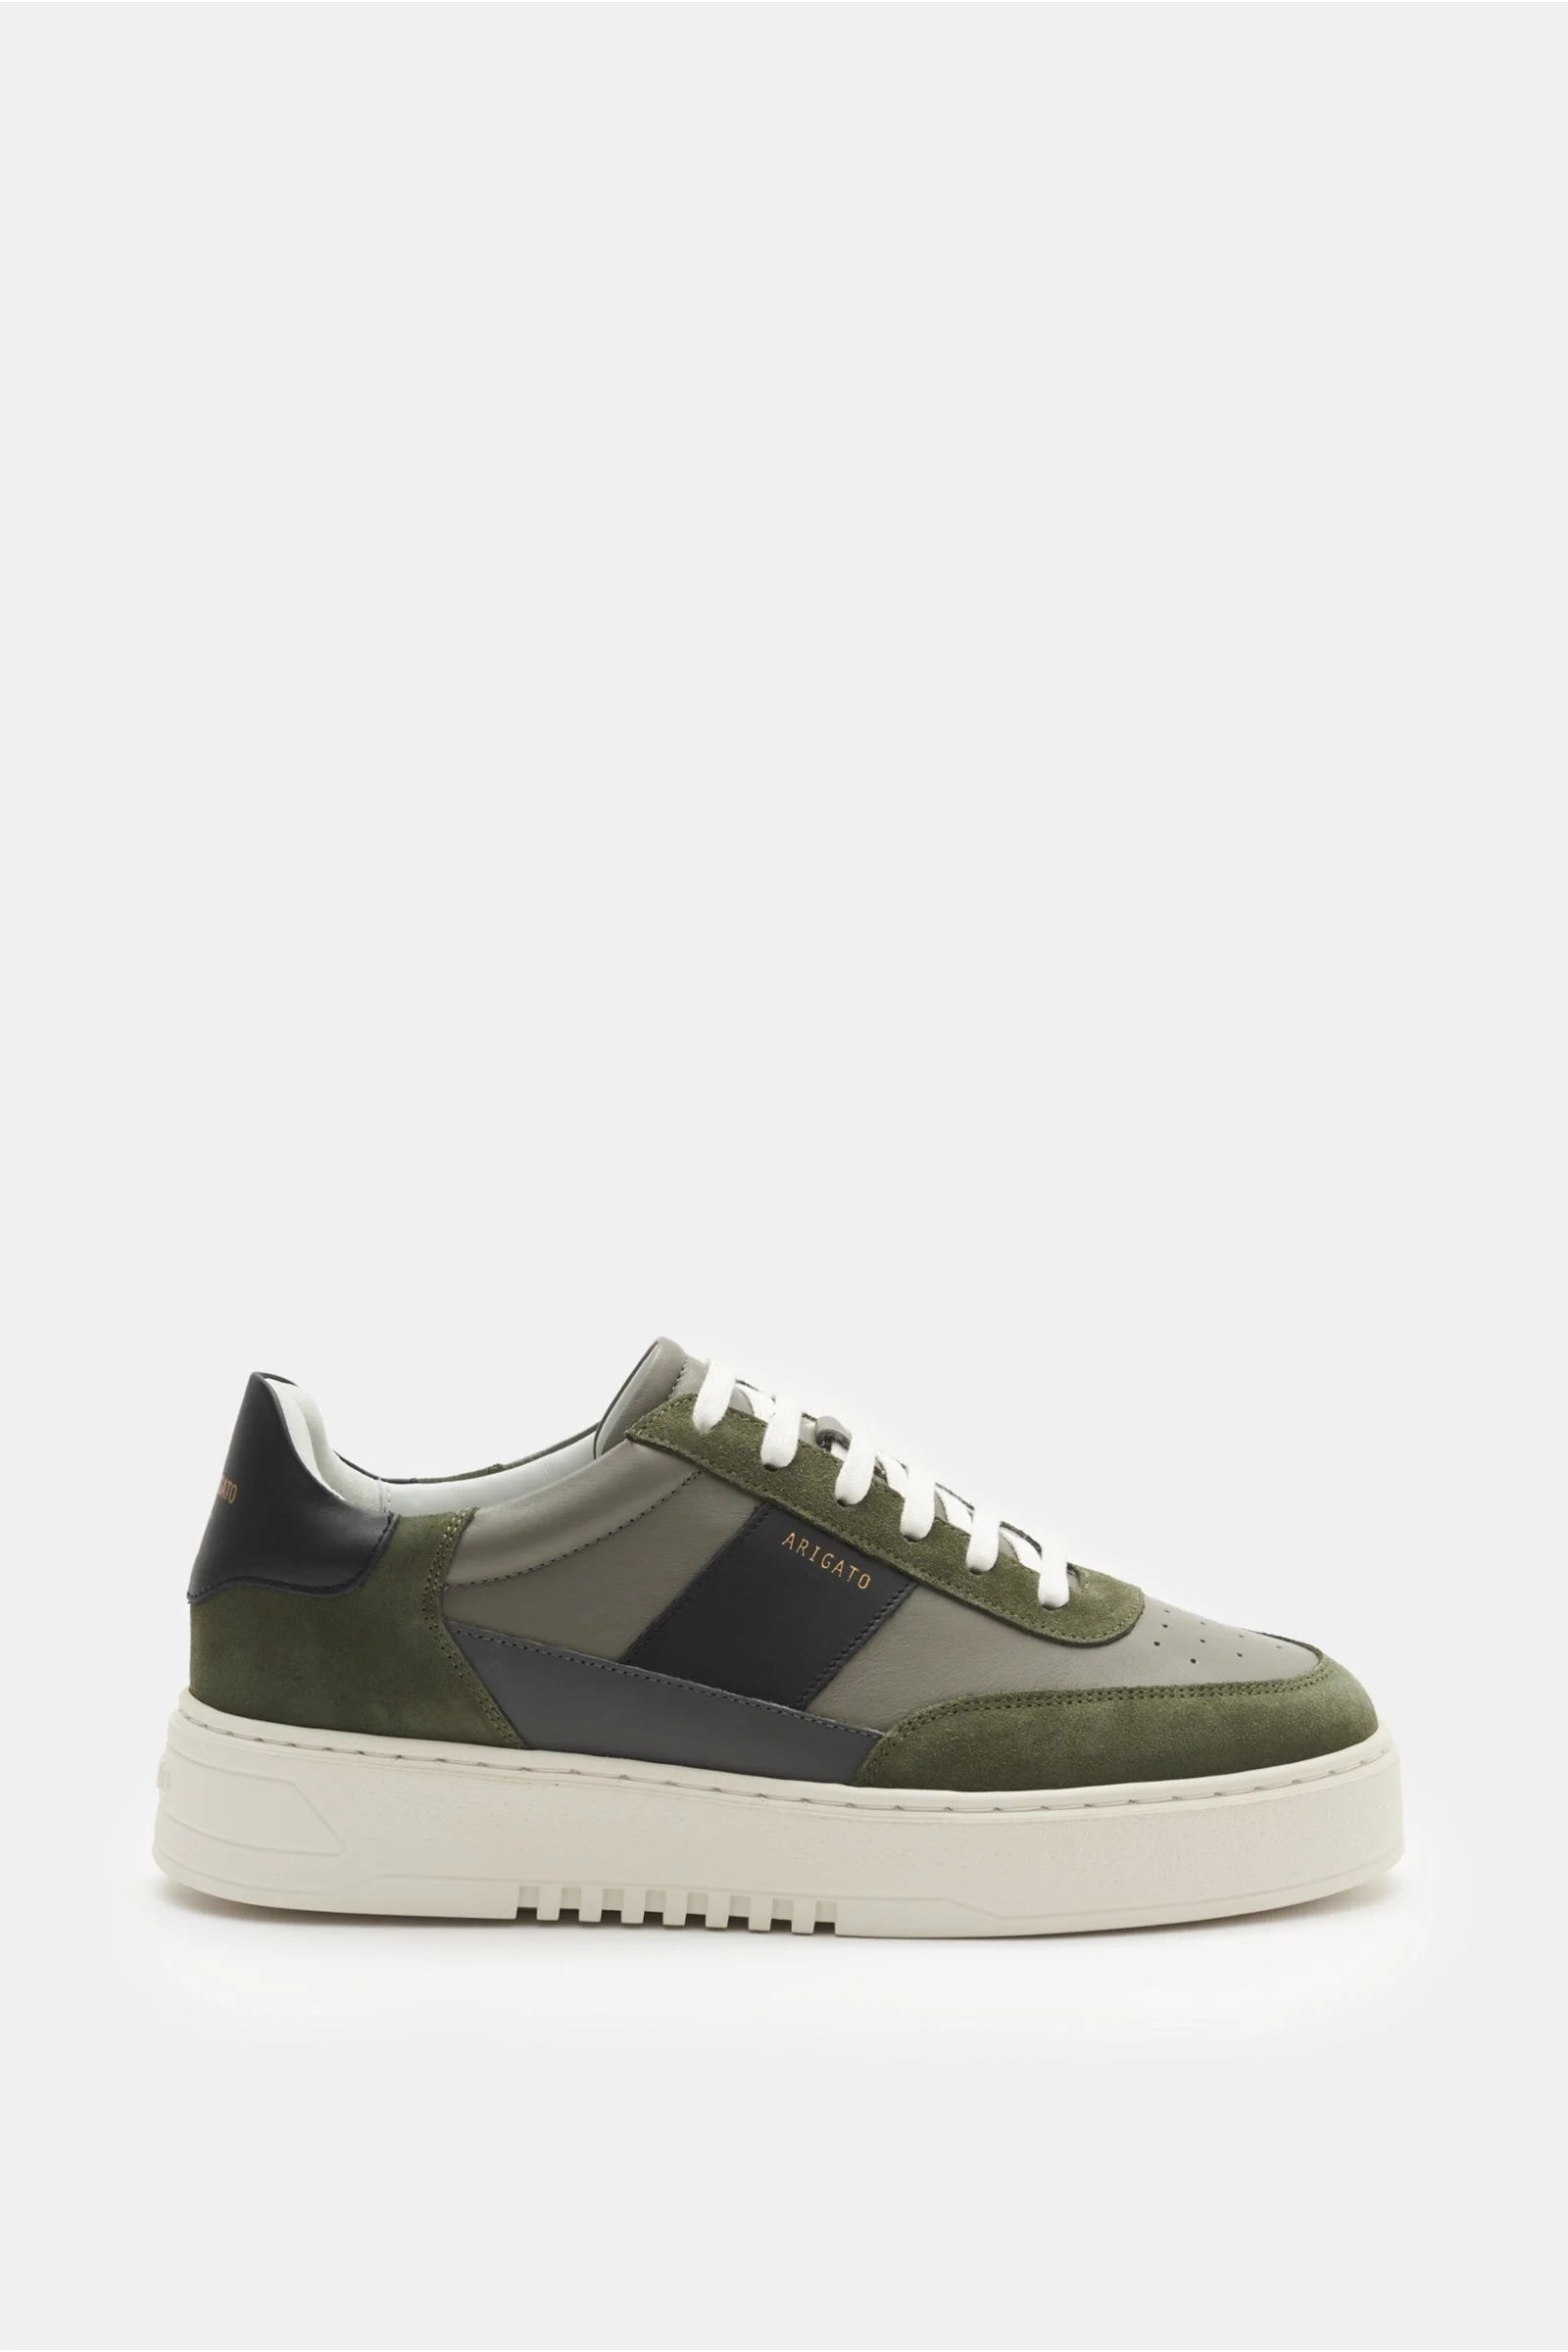 Orbit sneakers - grey / green